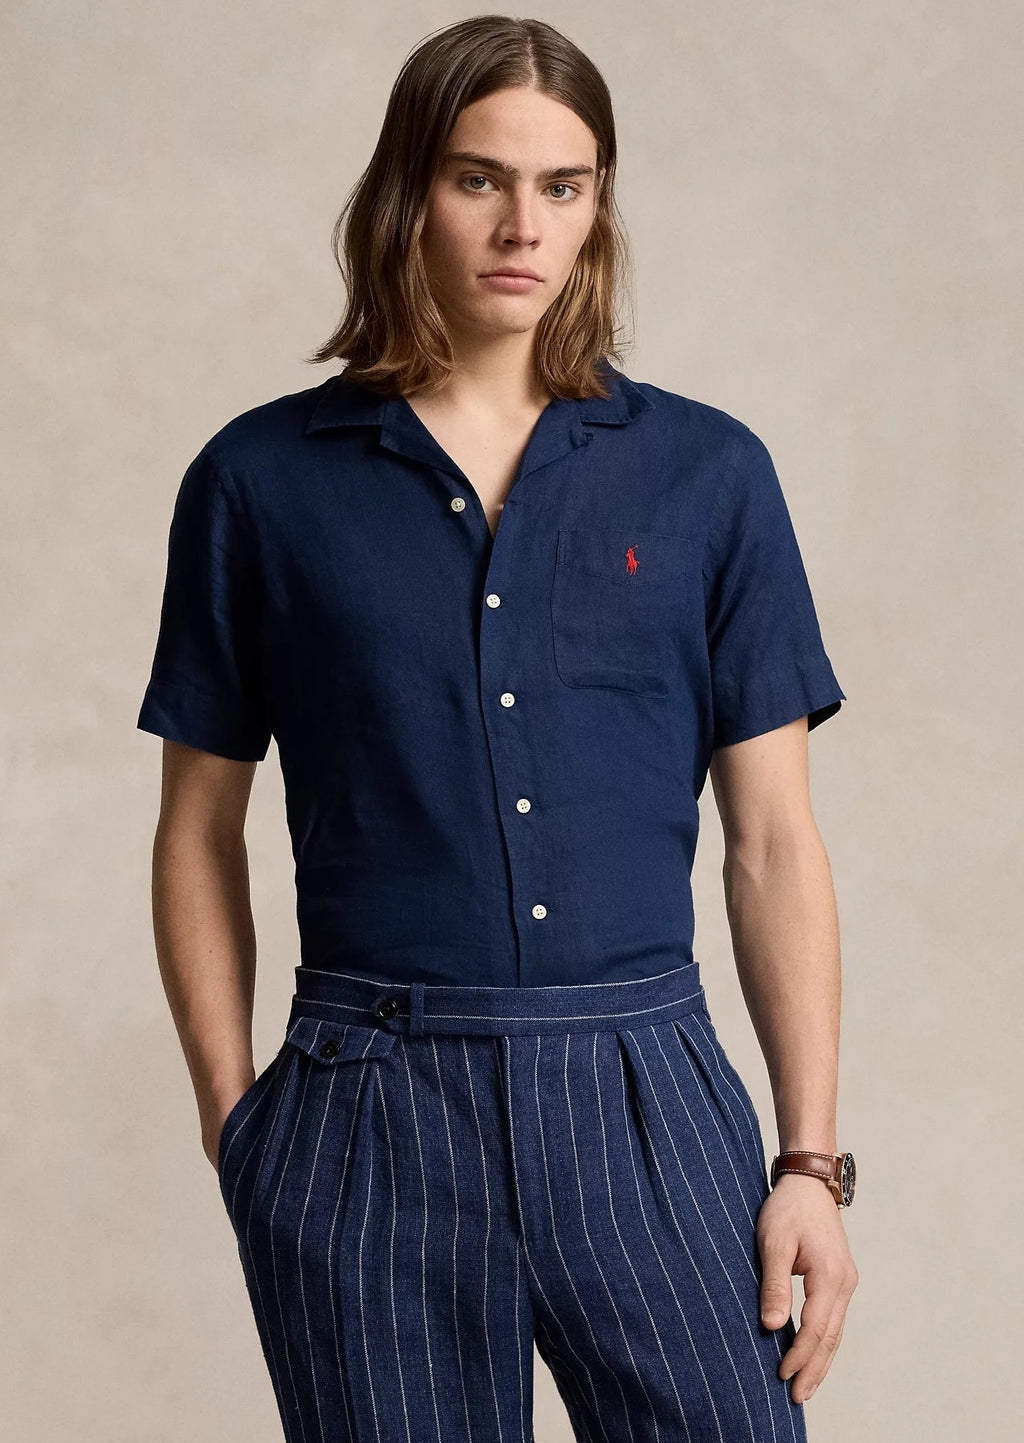 Chemise manches courtes homme Ralph Lauren marine en lin | Georgespaul